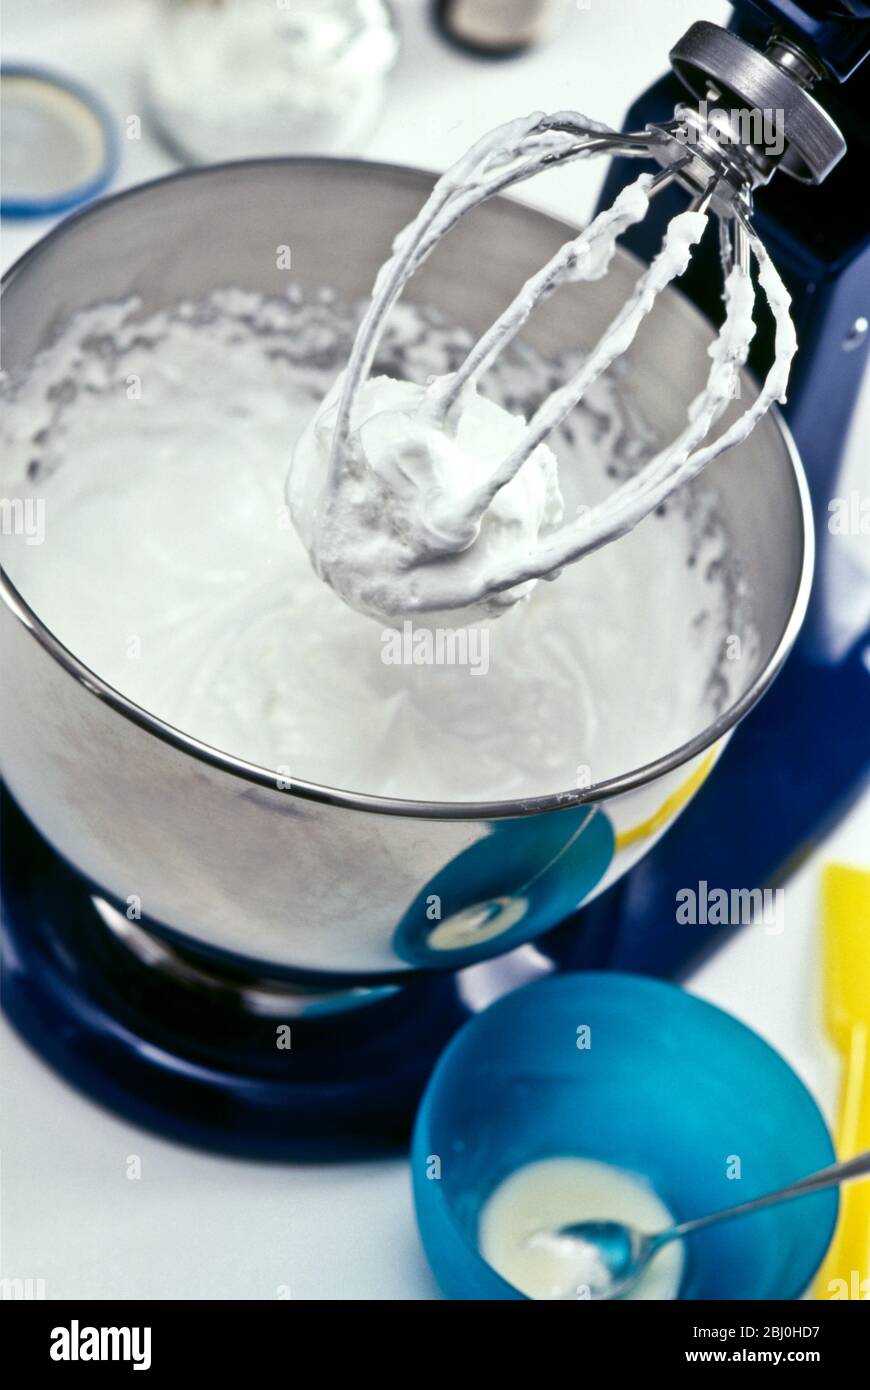 Geschlagenes Eiweiß in Edelstahl-Mixer in Küche Einstellung, zeigt Steifigkeit des Eiweiß - Stockfoto